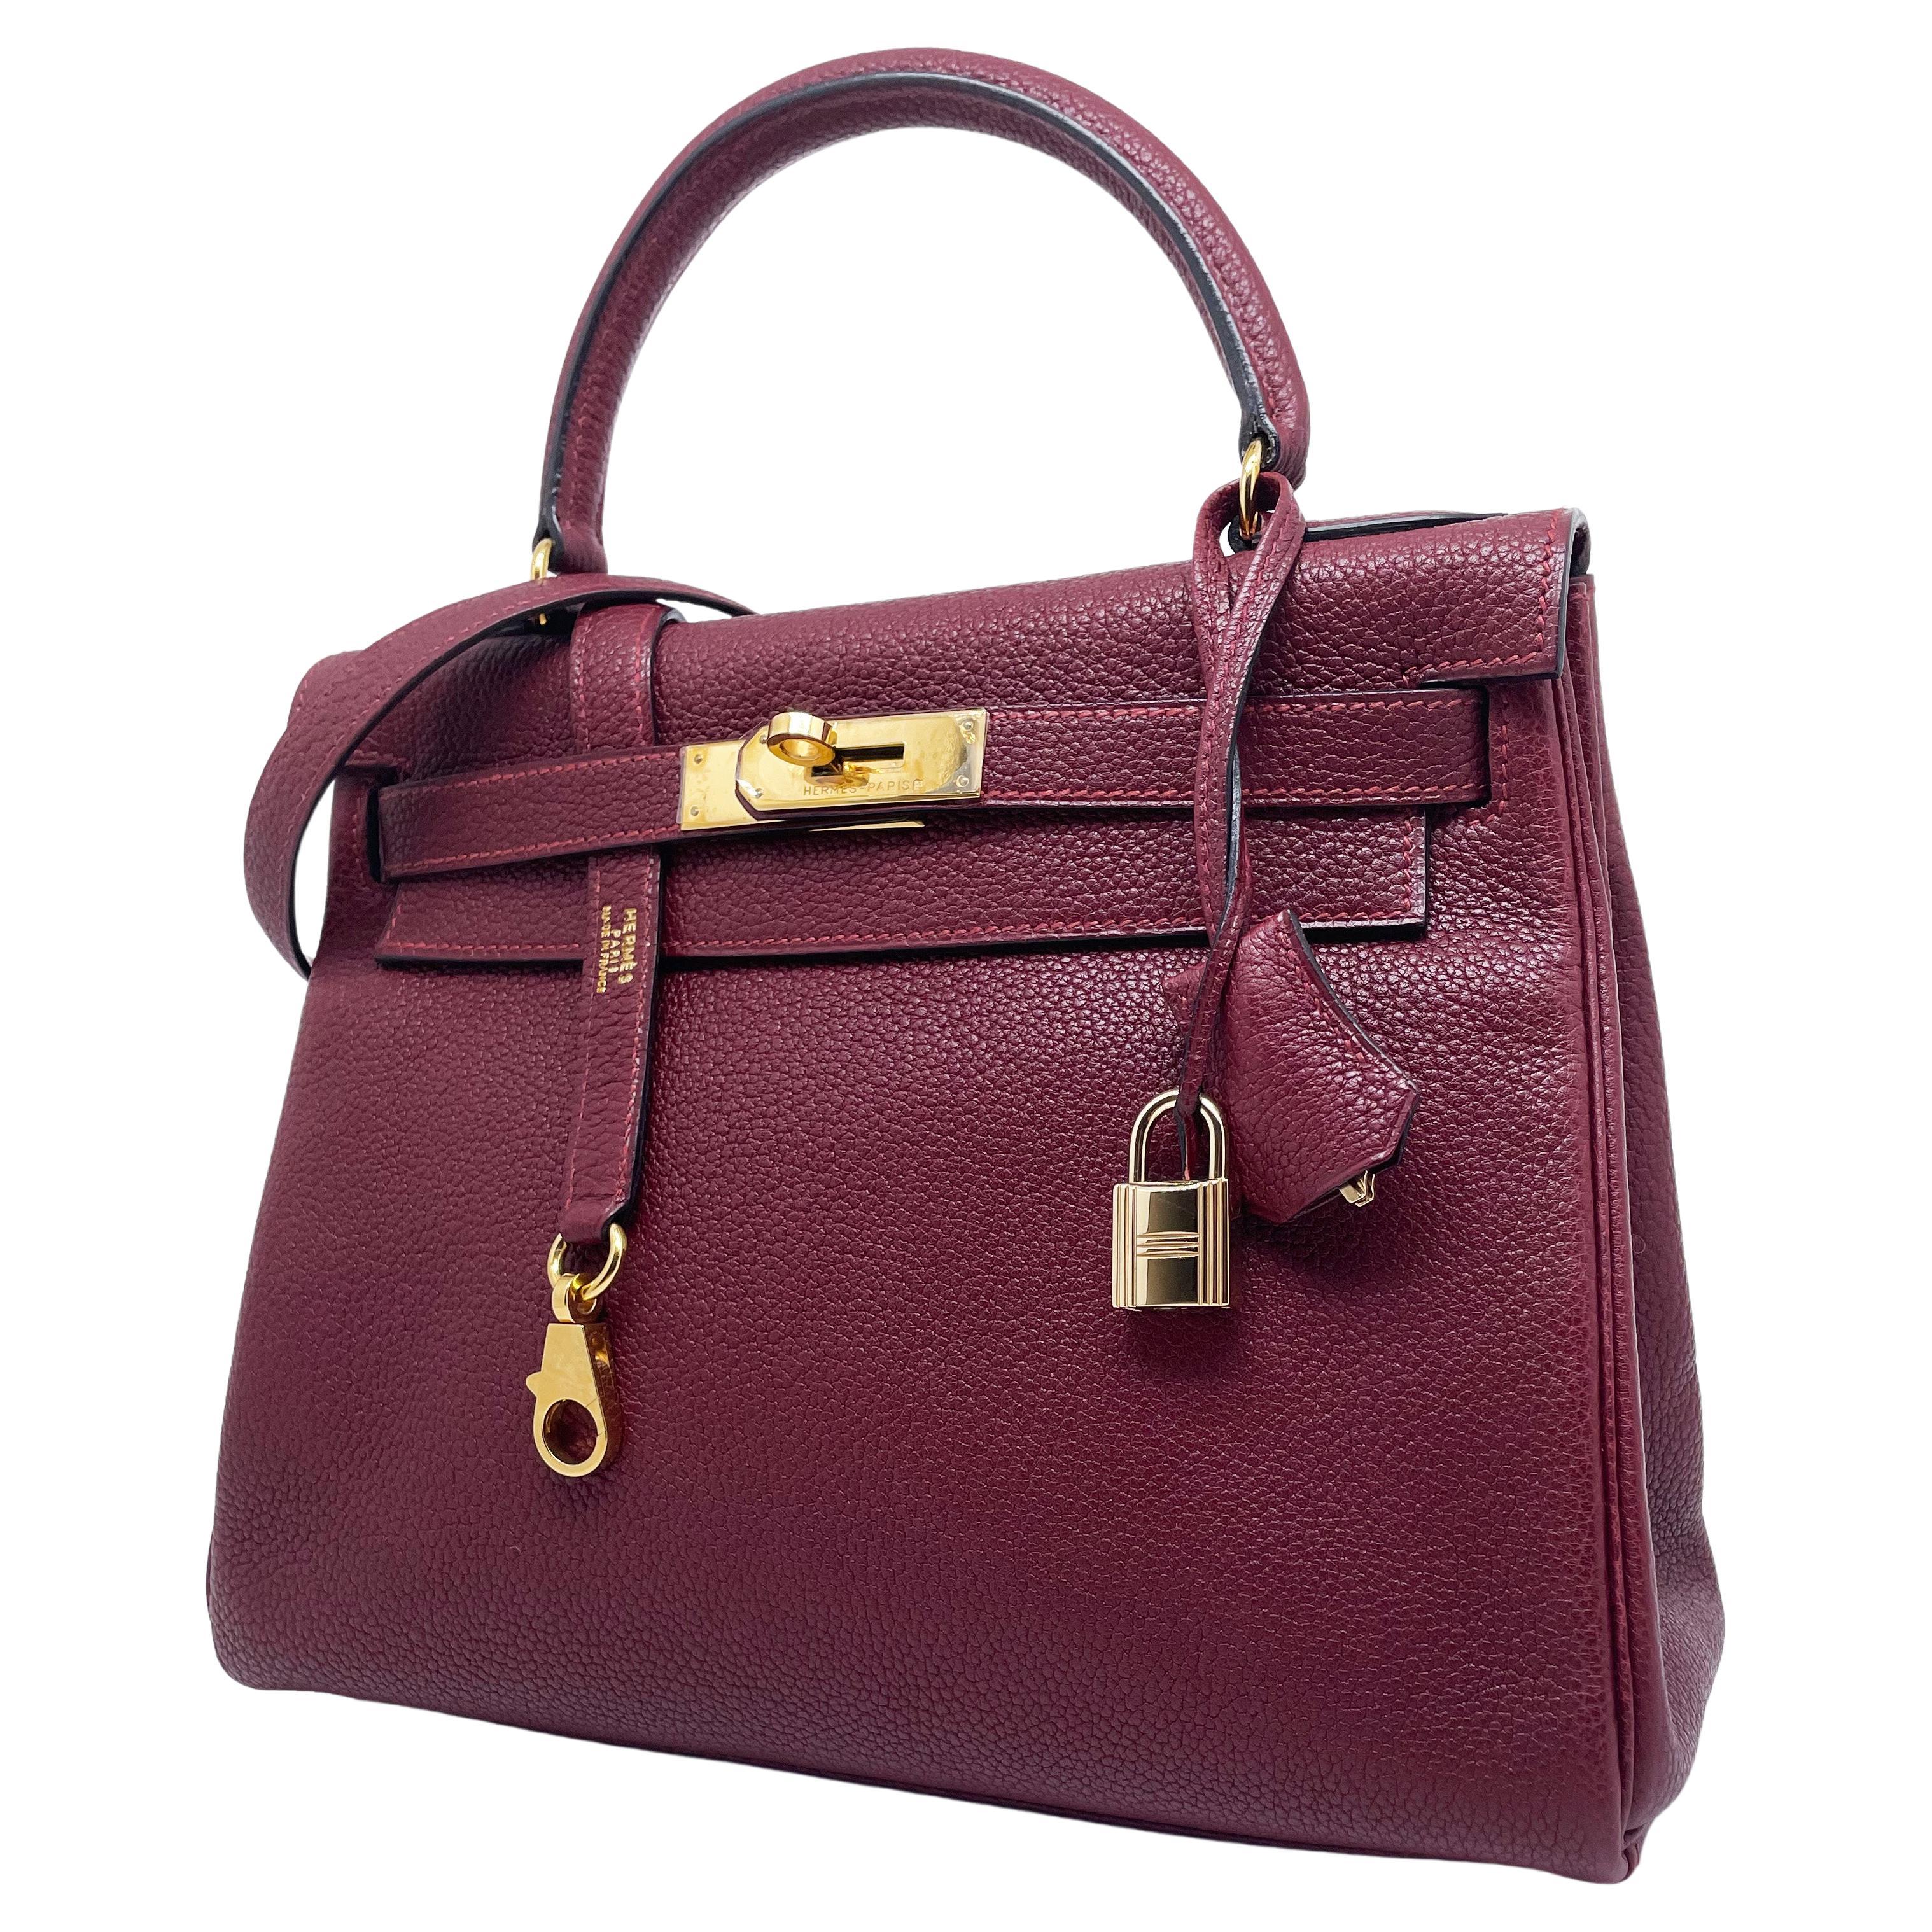 Hermes Kelly bag Returned Burgundy Togo leather 28 cm